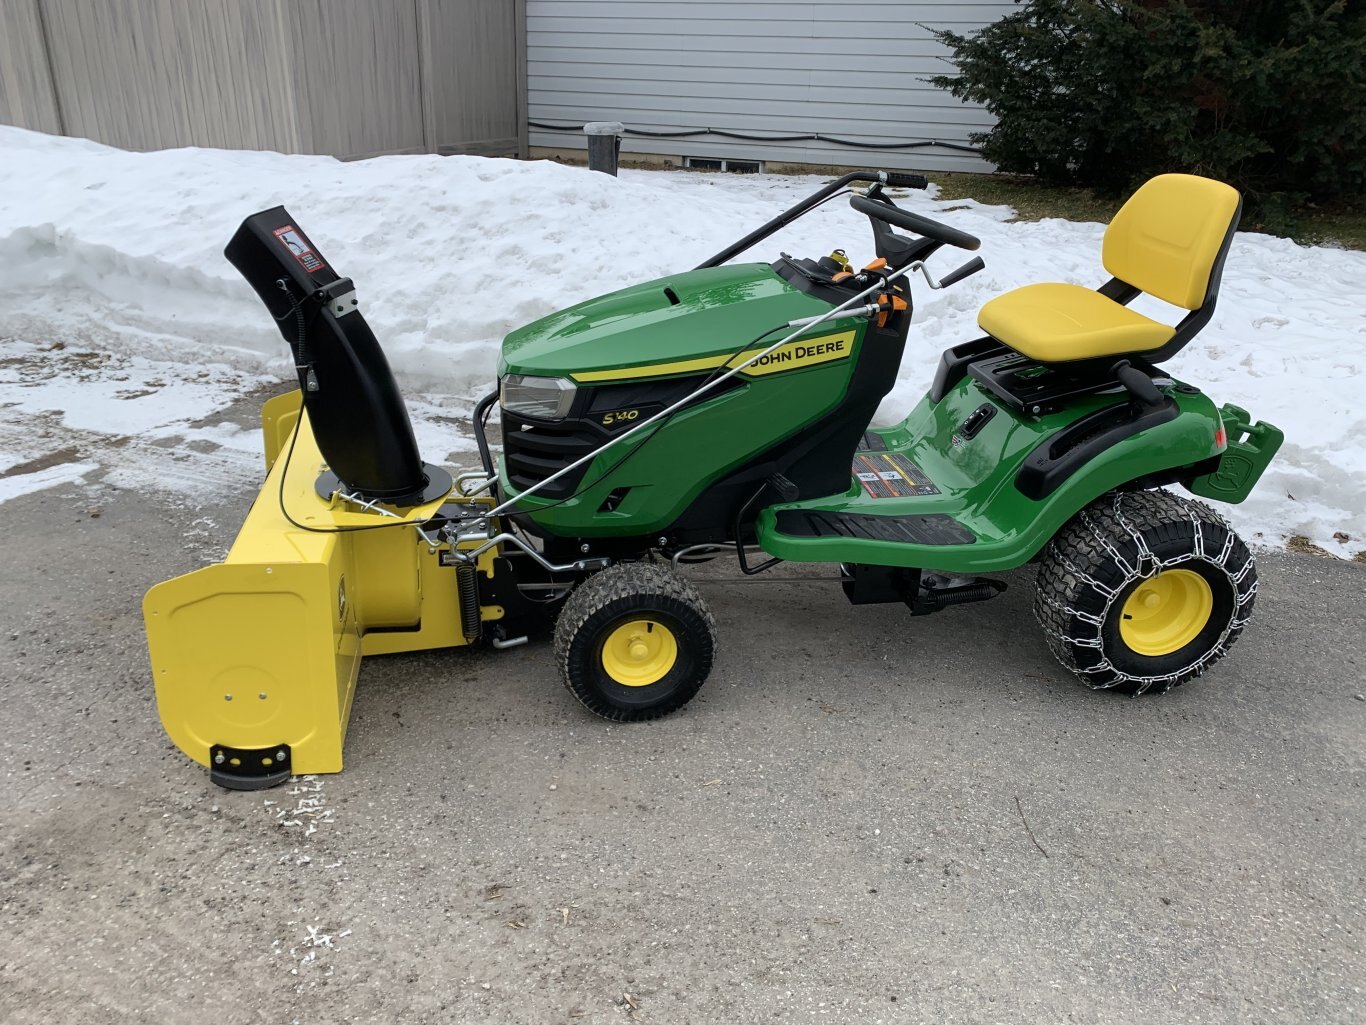 John Deere S240 Lawn Tractor, 48 Mower deck w/ Snowblower